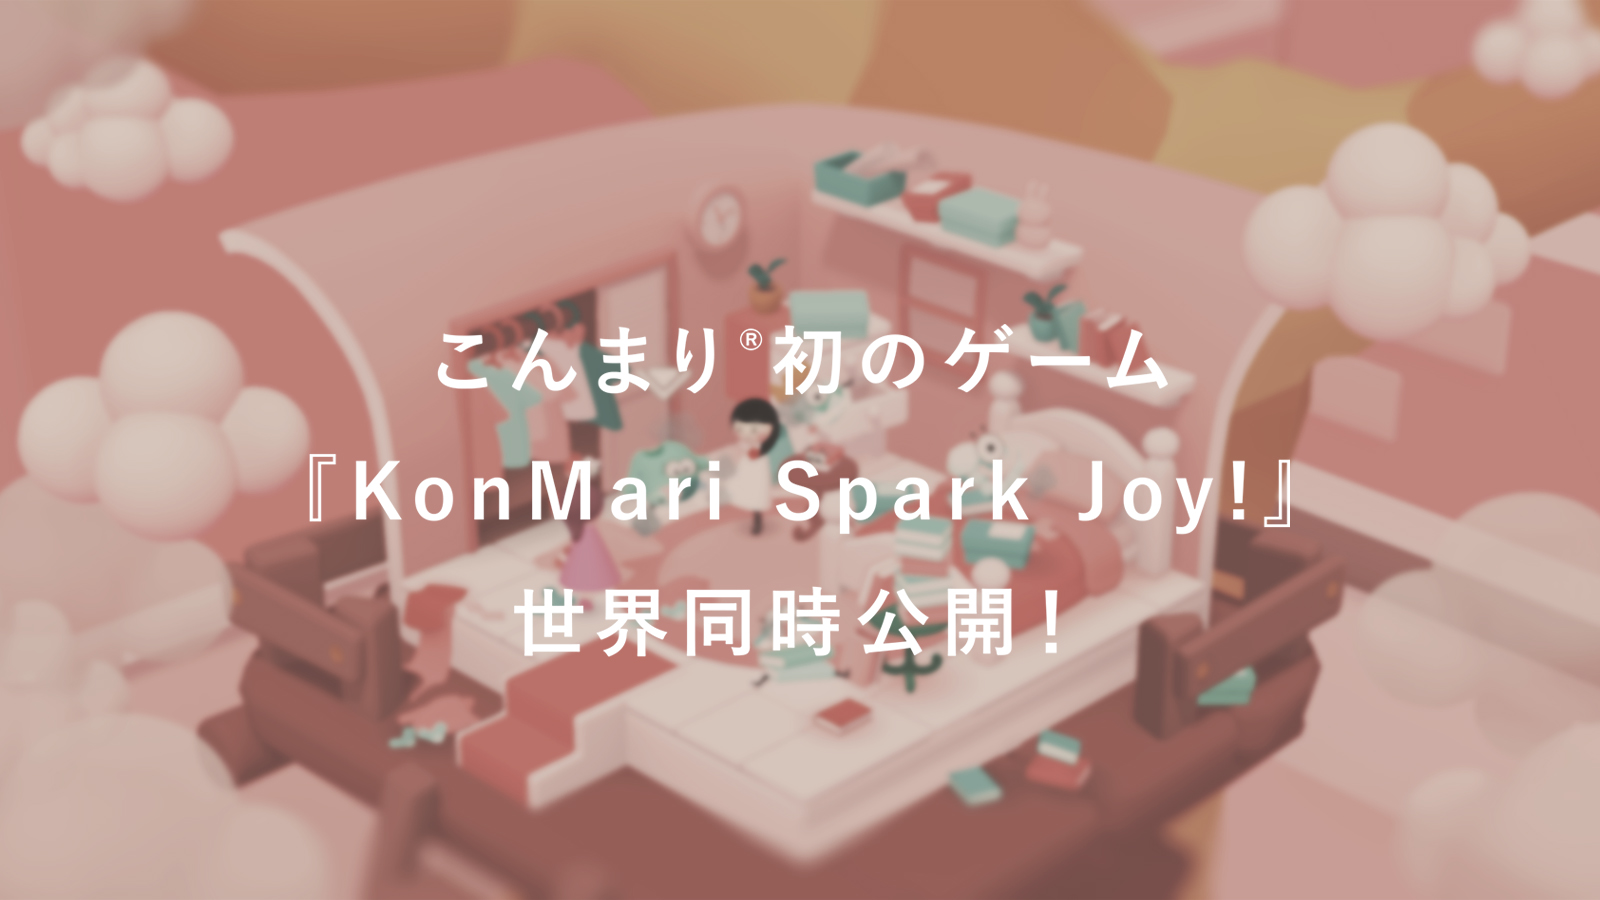 ゲーム公開のお知らせ 初のゲーム Konmari Spark Joy として世界同時公開 Konmari Media Japan Inc Official Site